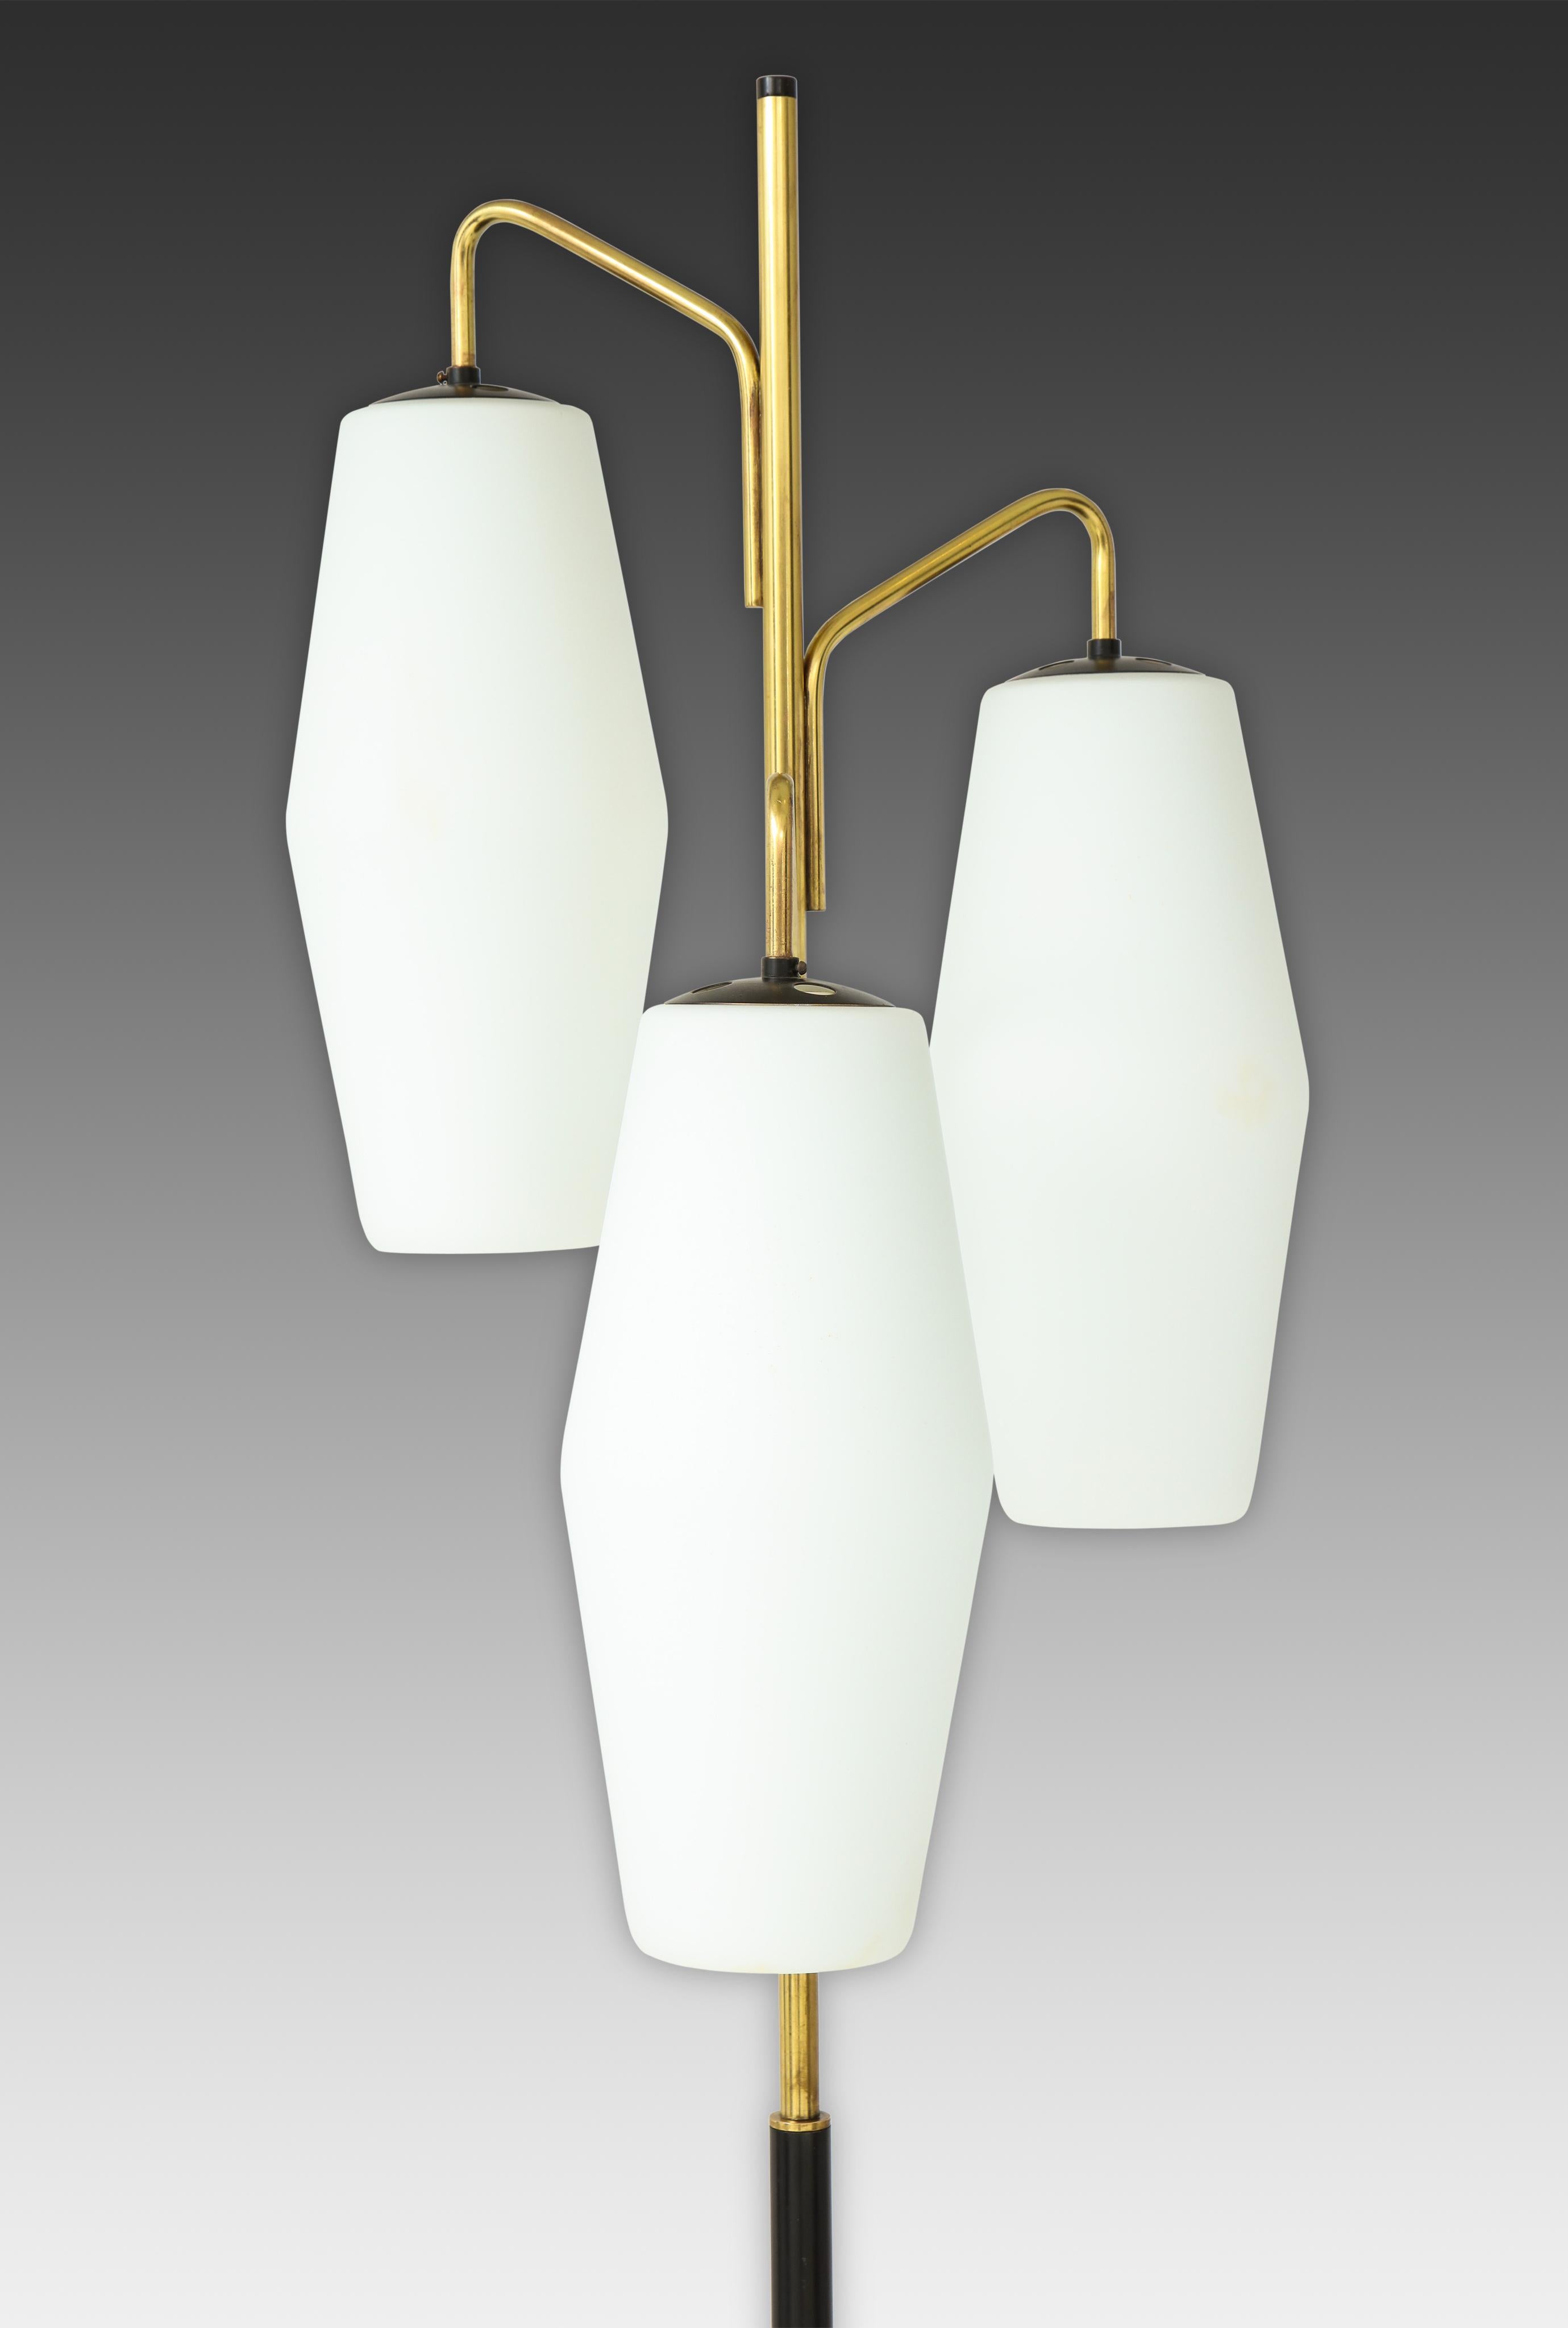 Lampadaire Stilnovo avec trois abat-jours lanternes en verre opalin suspendus à des bras en laque dorée et une tige émaillée noire se terminant sur une base en marbre de Carrare, Italie, années 1960. 
Nouvellement recâblé aux normes